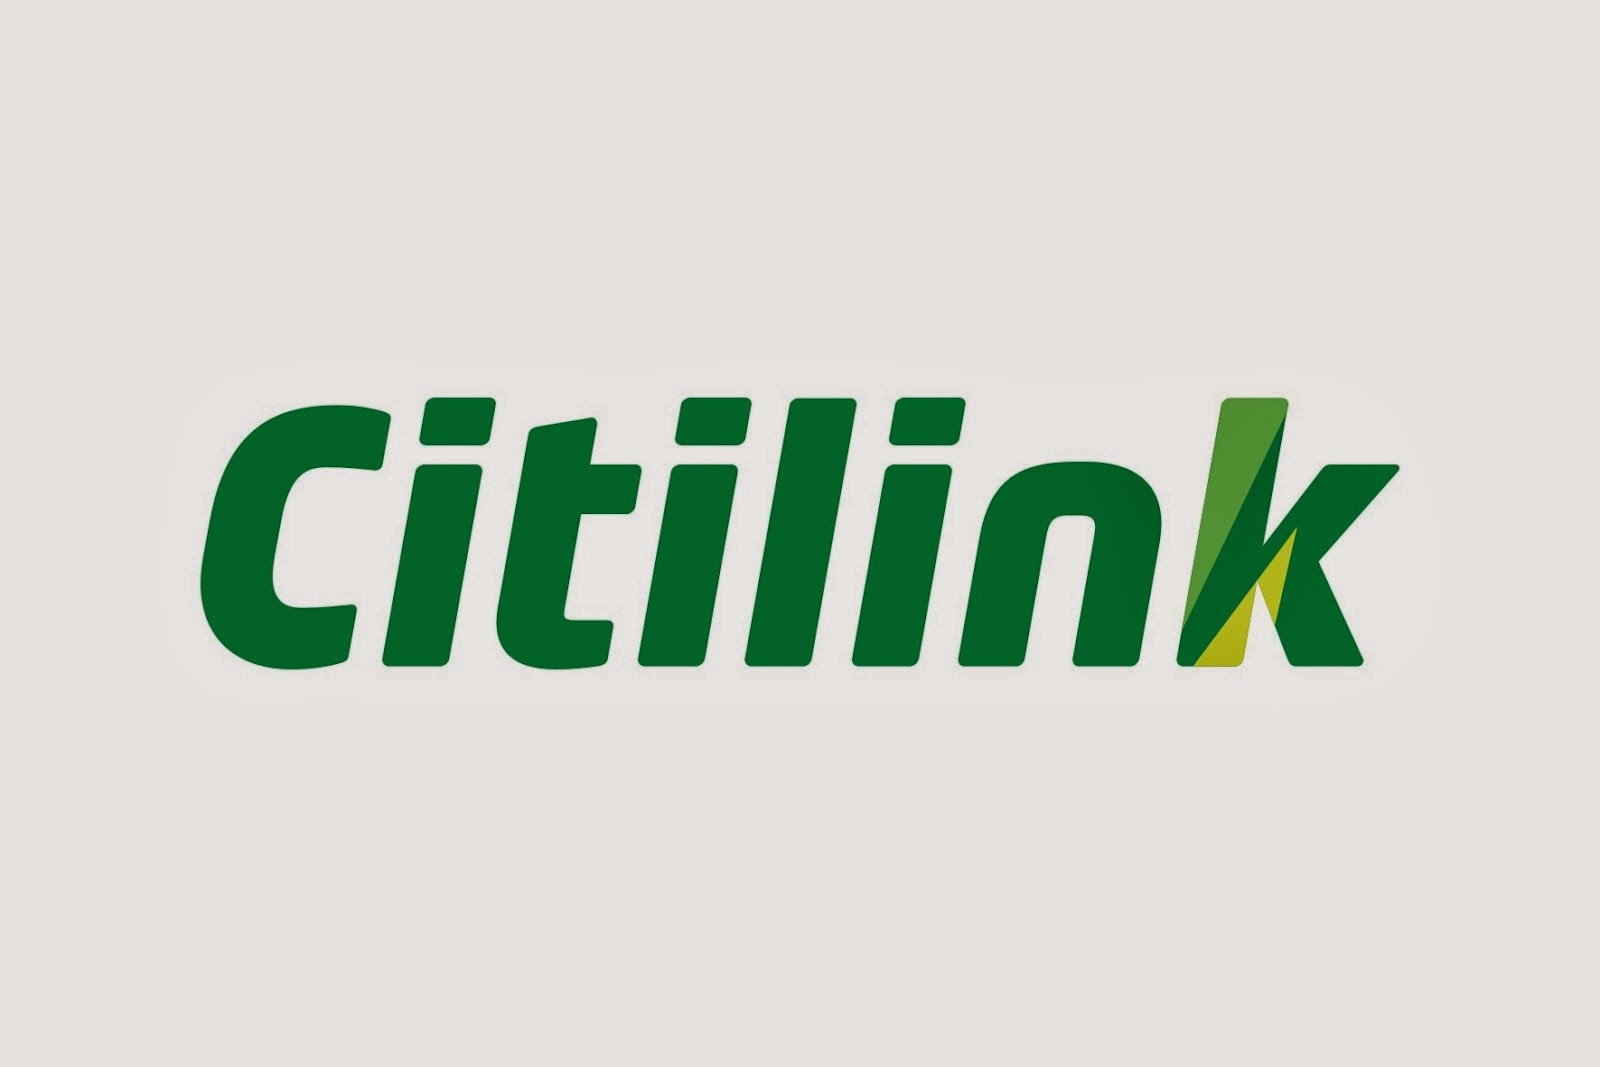 Citilink Logo Vektor Maskapai Penerbangan